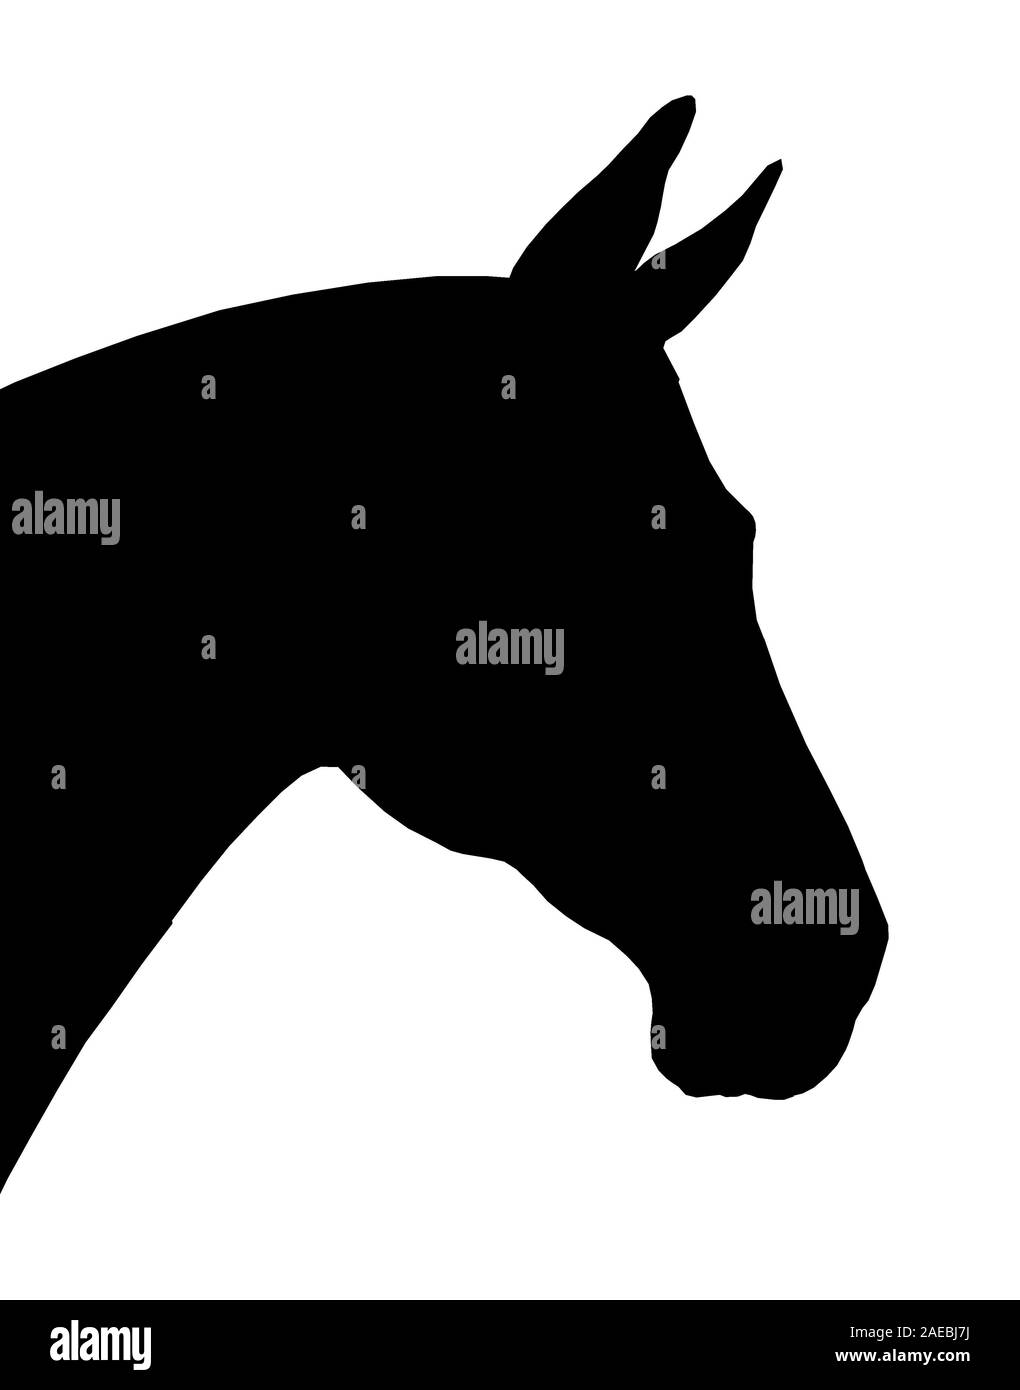 Beau cheval. Portrait Silhouette d'un cheval. Dessin d'équidés. Banque D'Images